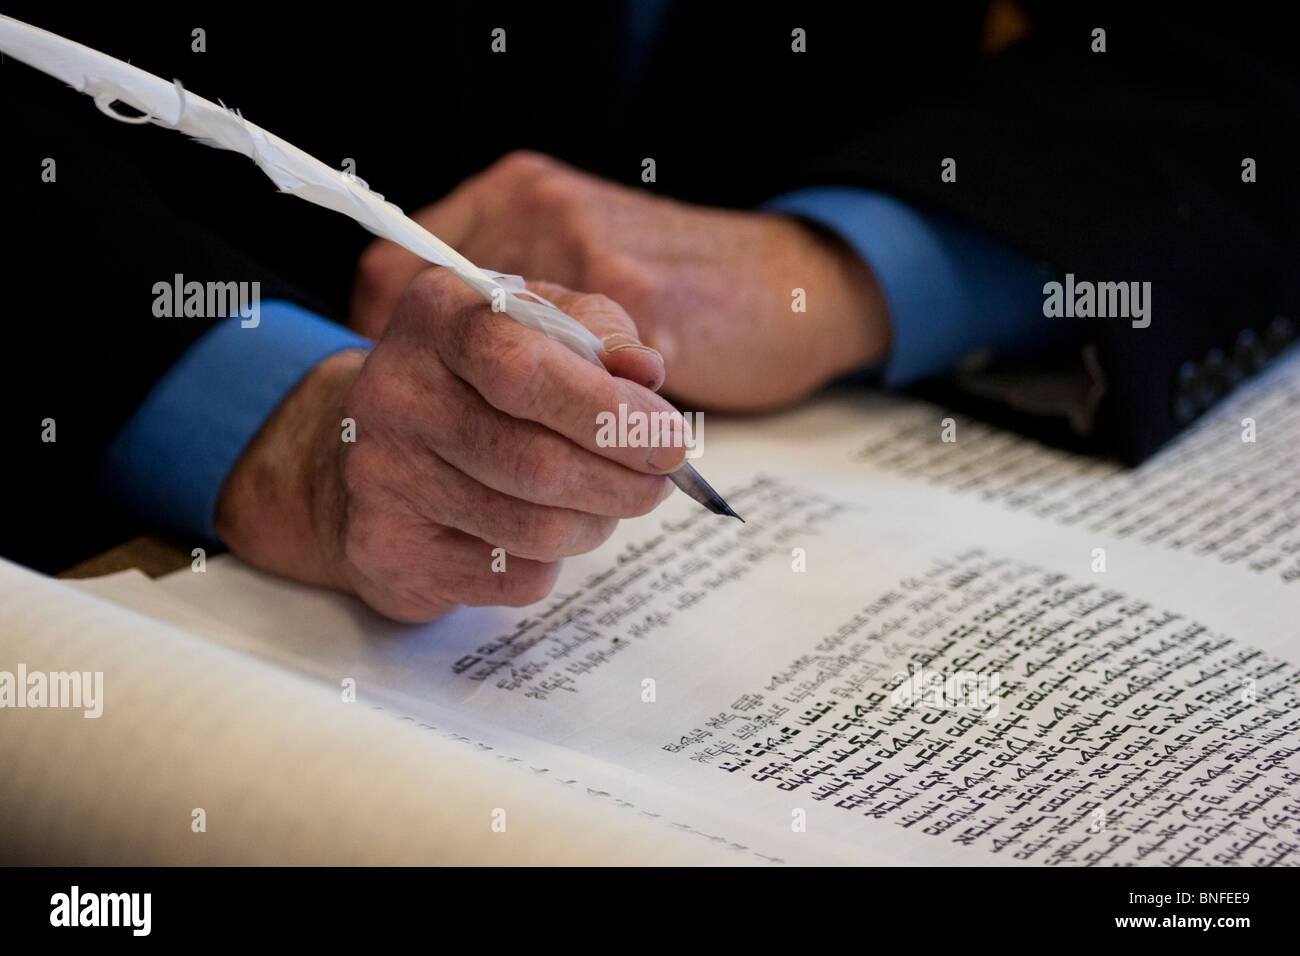 Mit koscher-Tinten, Pergament und Feder Stift, ein Sofer schafft eine neue Thora für eine jüdische Gemeinde in einem Vorort von Washington, D.C. Stockfoto